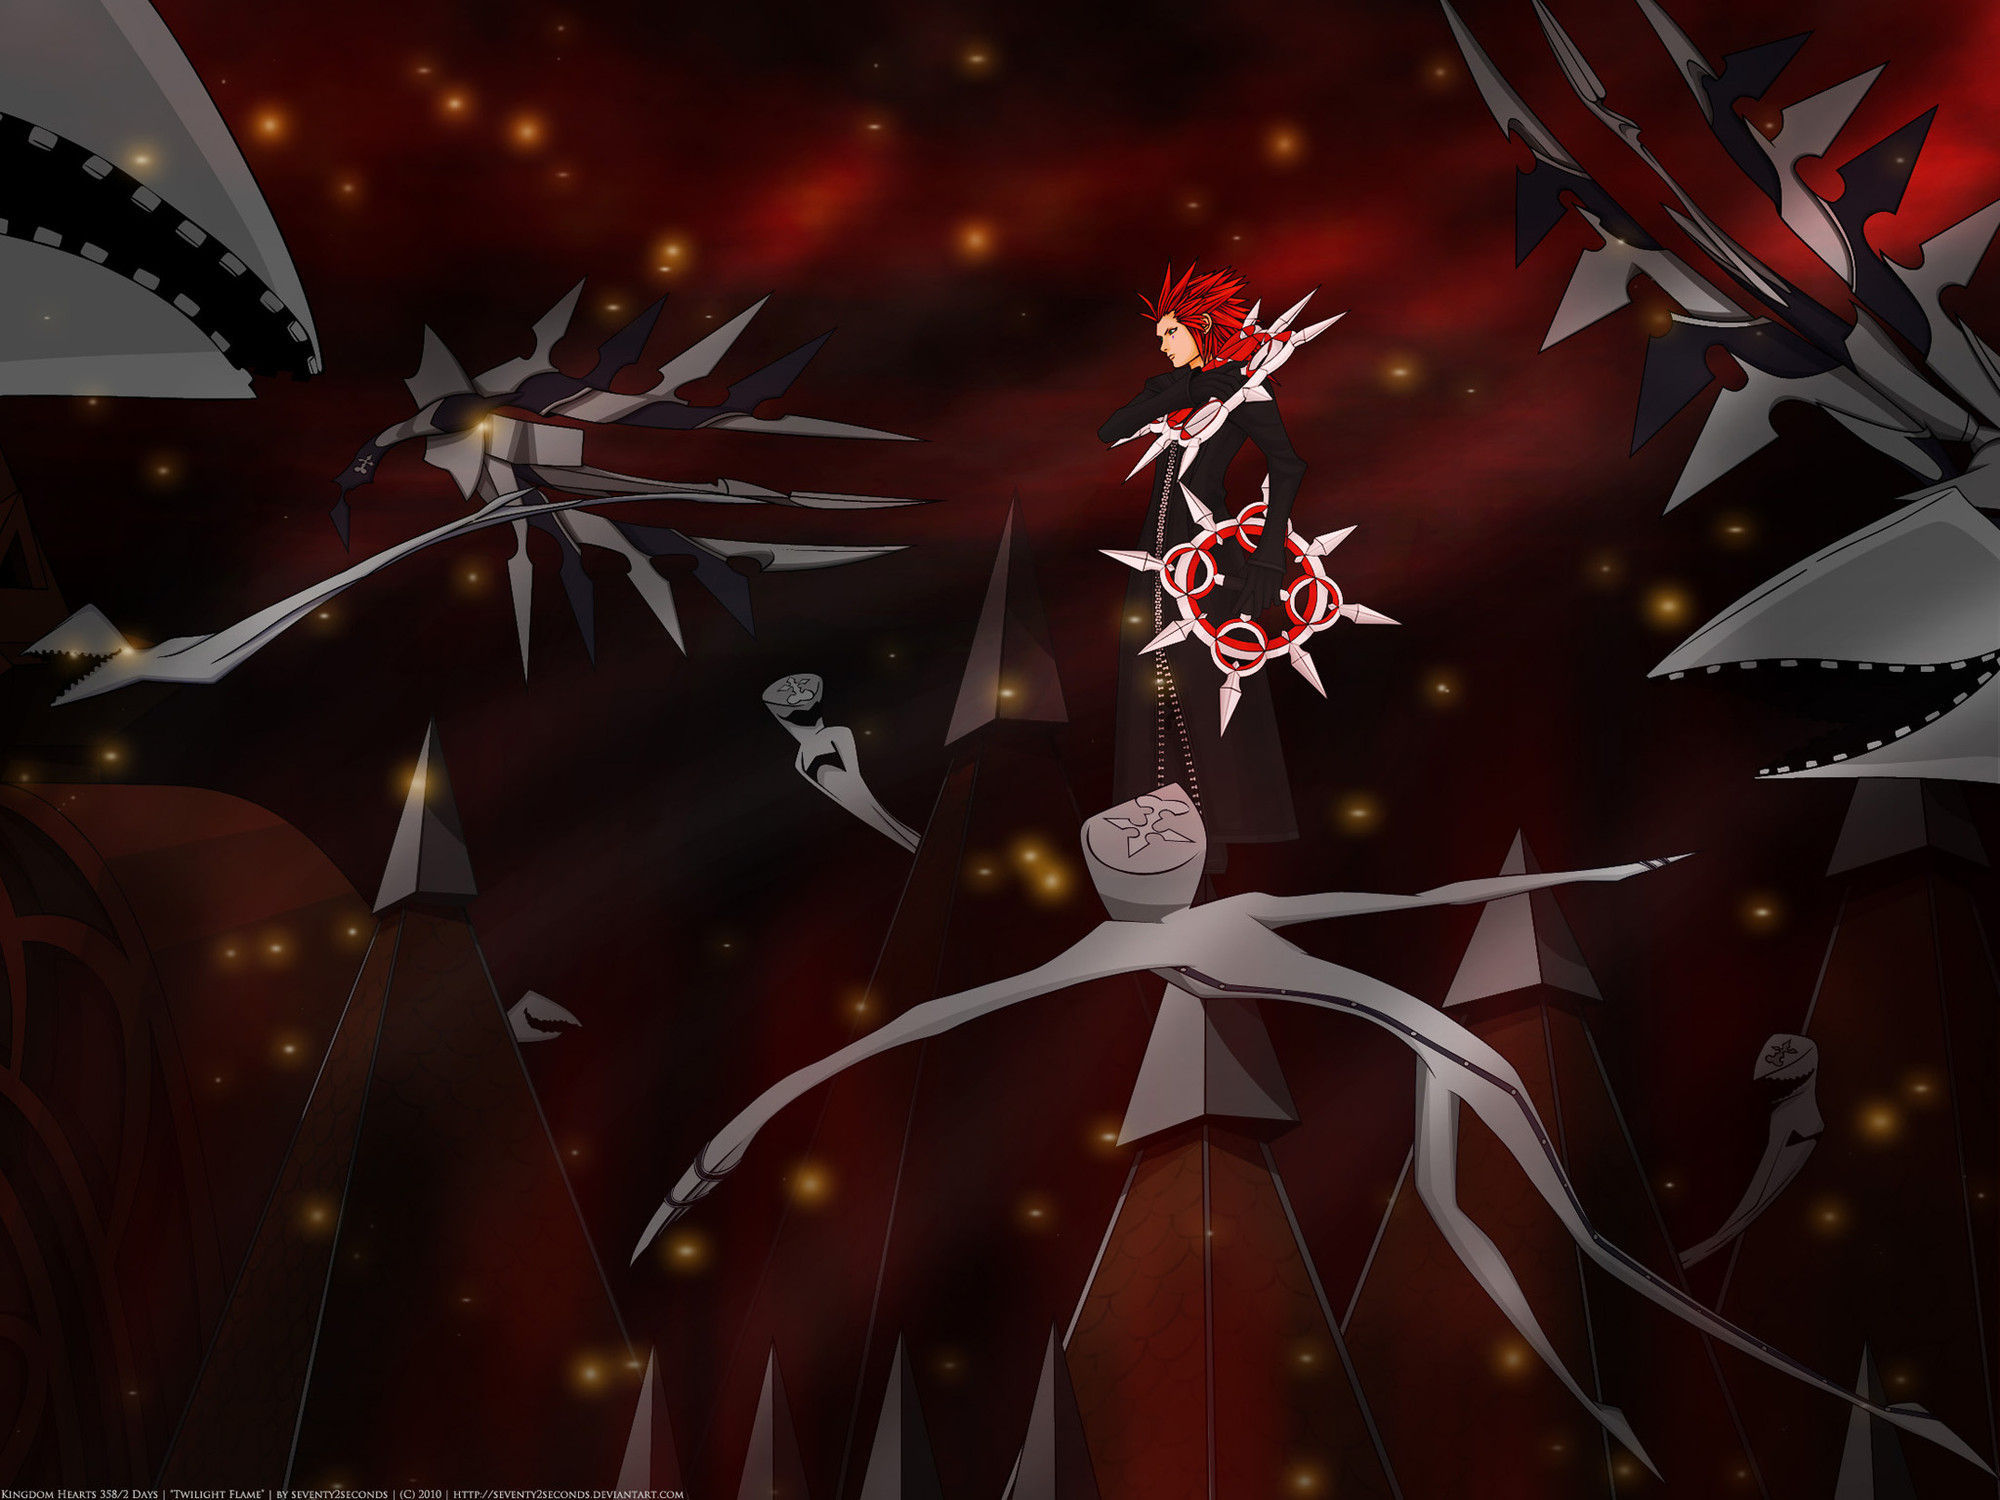 View Fullsize Axel (Kingdom Hearts) Image